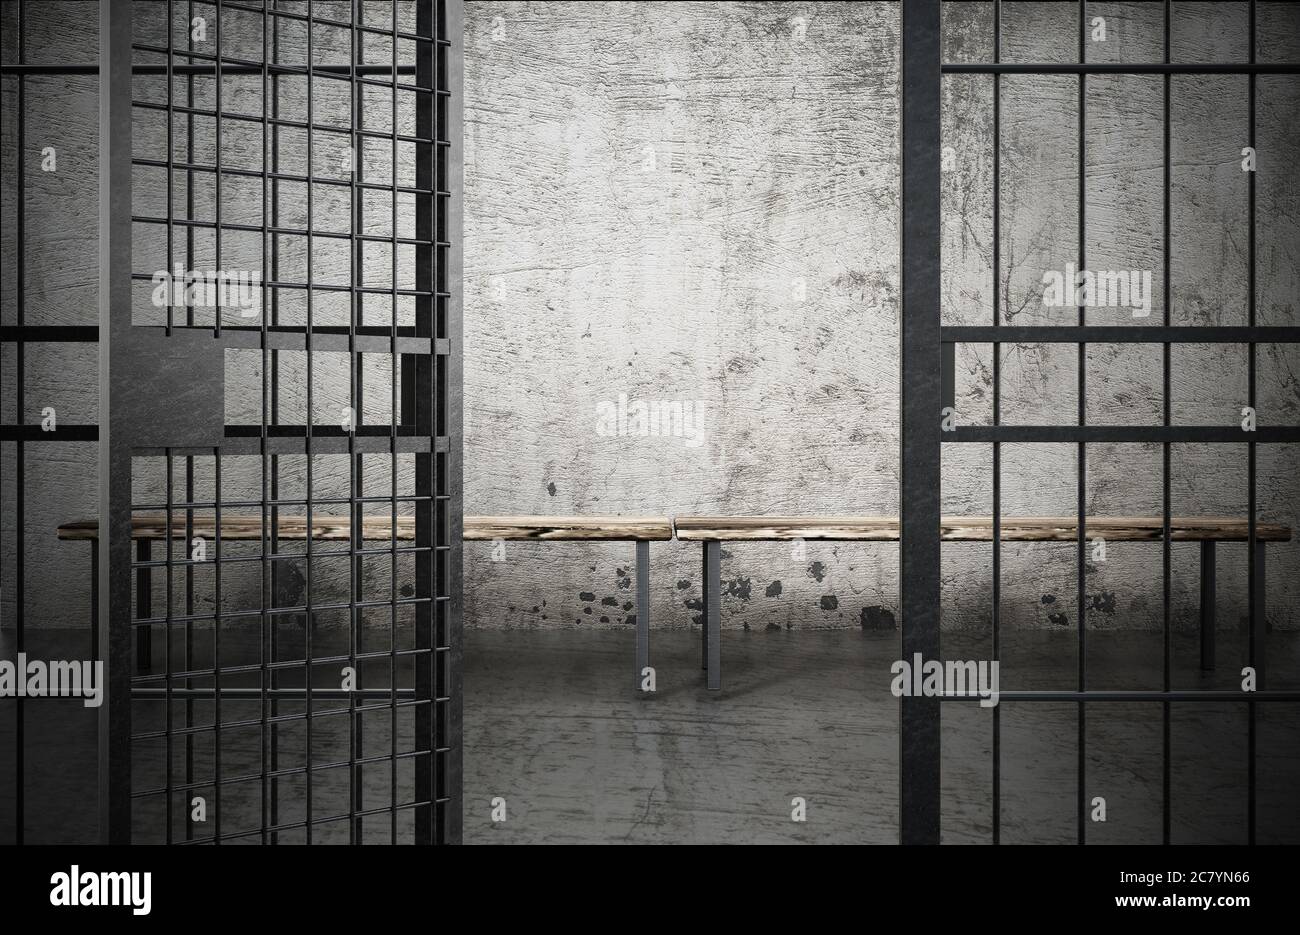 Cellule de prison avec porte ouverte et vieux murs sales. Illustration 3D. Banque D'Images